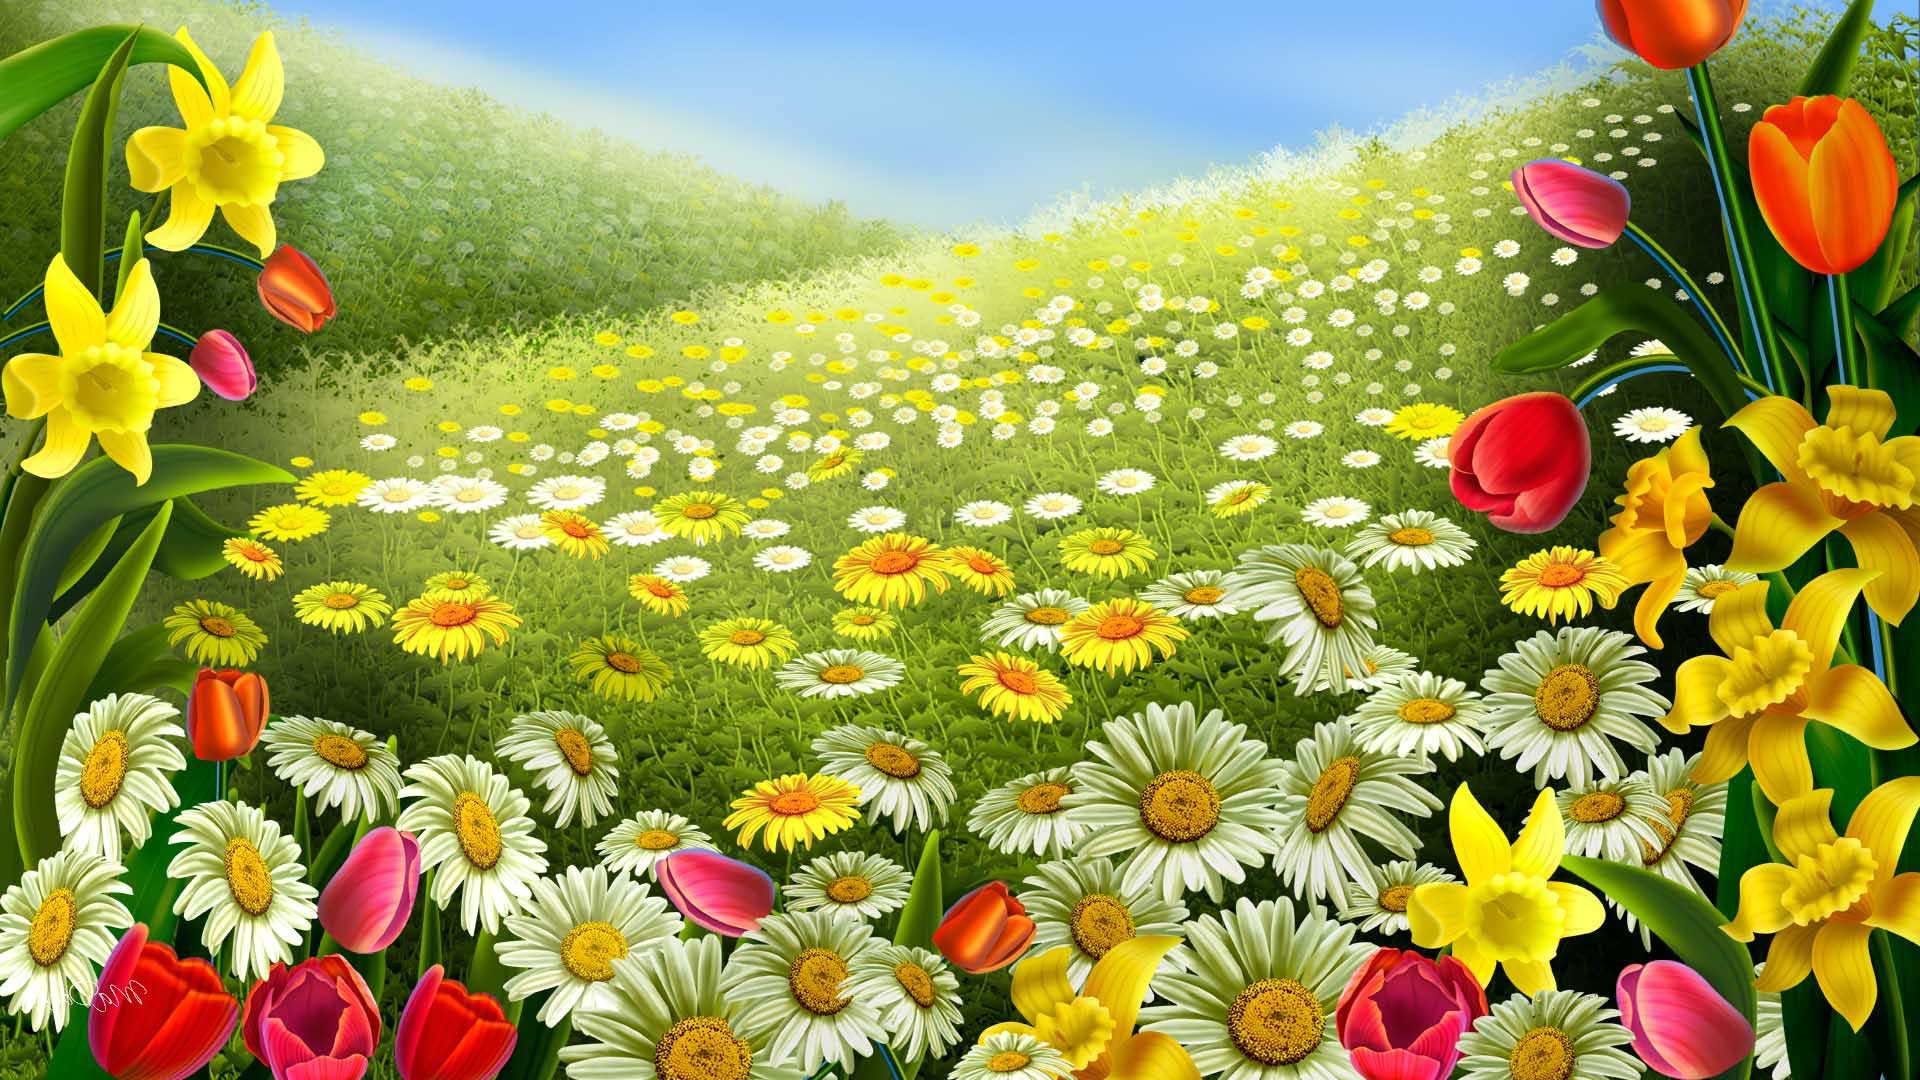 thanksgiving desktop wallpaper flowers spring wallpaper free Quotes